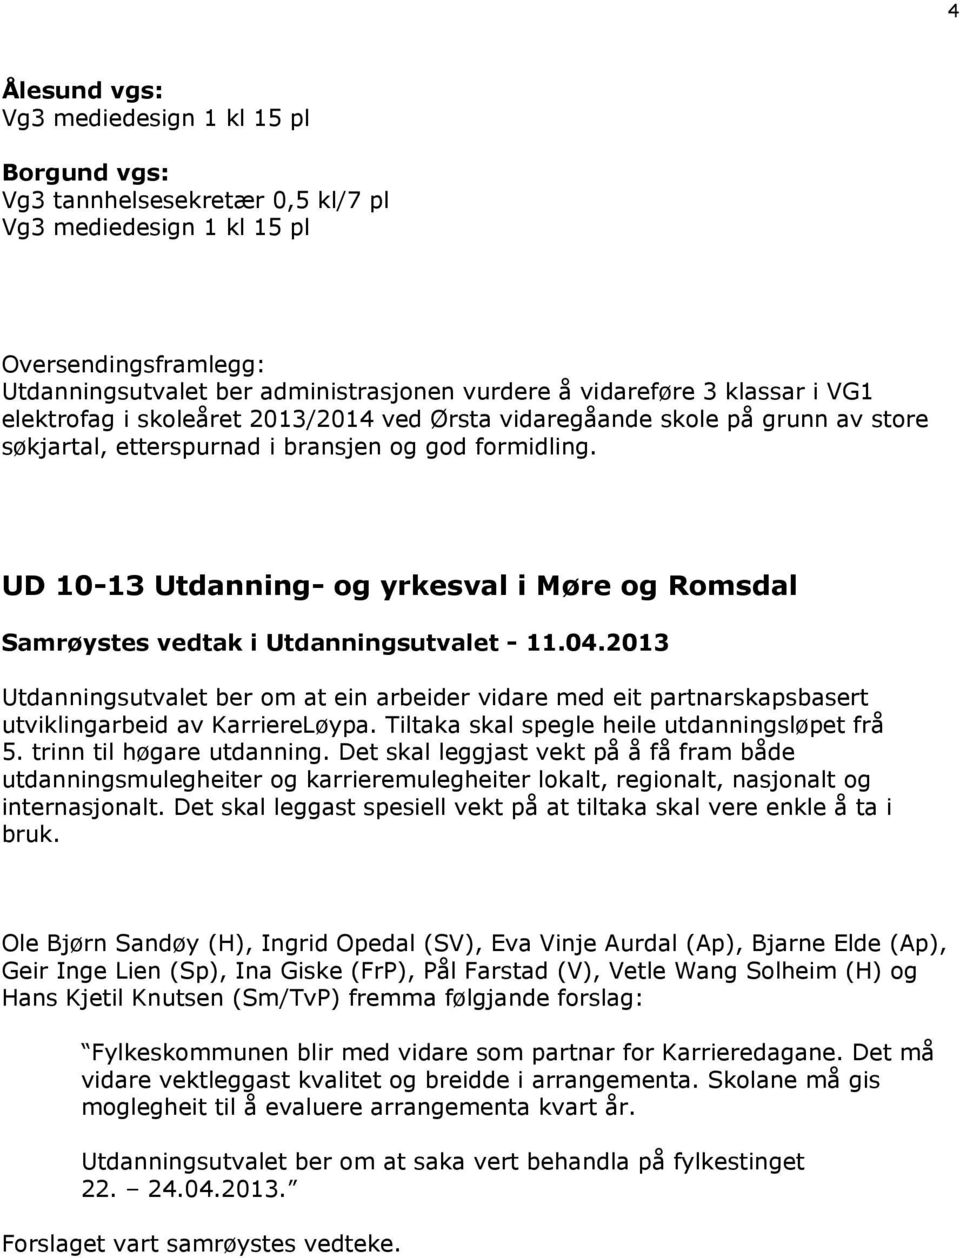 UD 10-13 Utdanning- og yrkesval i Møre og Romsdal Samrøystes vedtak i Utdanningsutvalet - 11.04.